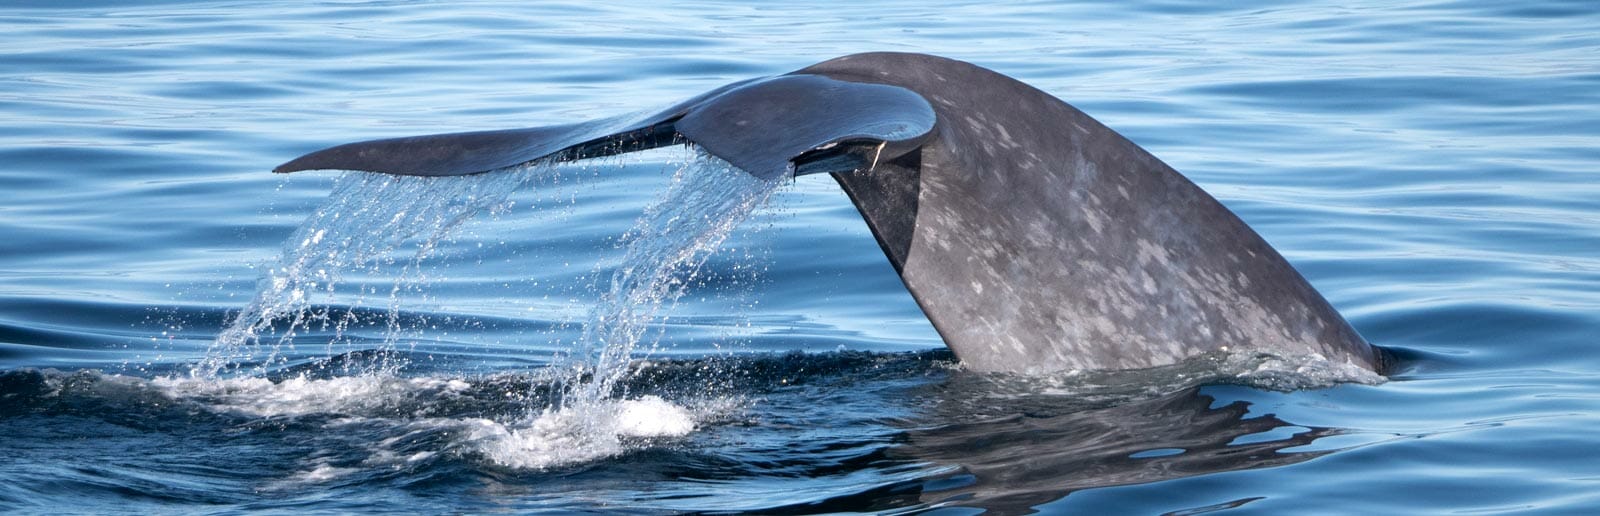 Santa Barbara Channel Whale Tail